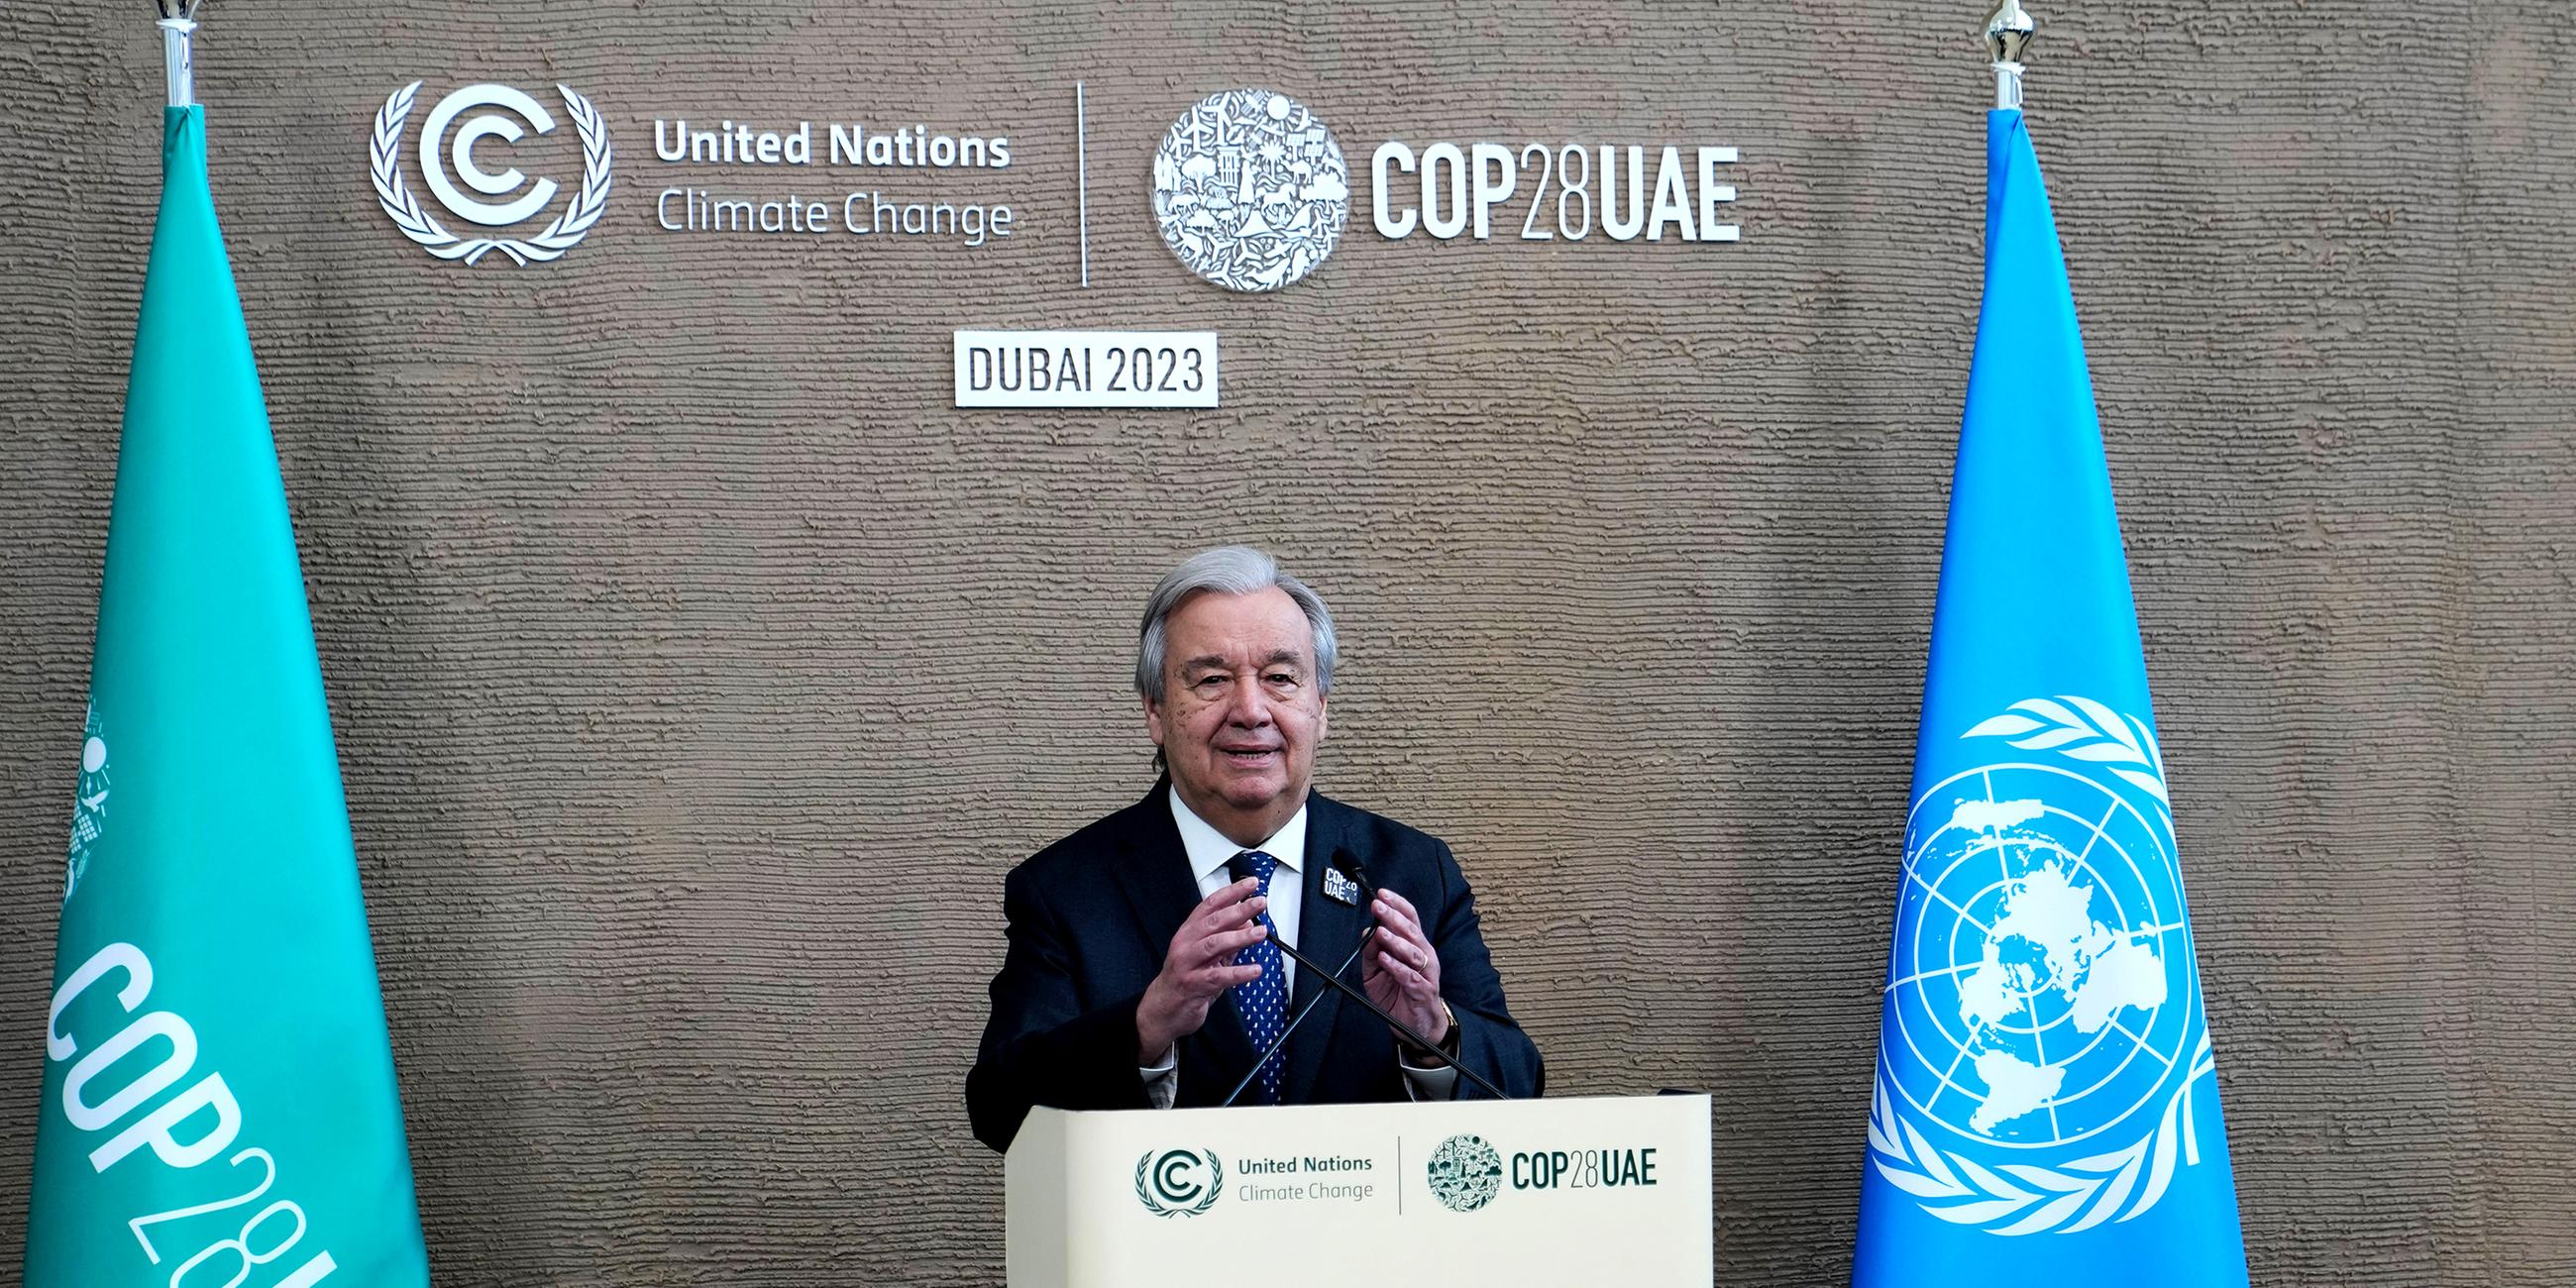 Antonio Guterres, UN-Generalsekretär, bei einer Pressekonferenz während der UN-Weltklimakonferenz